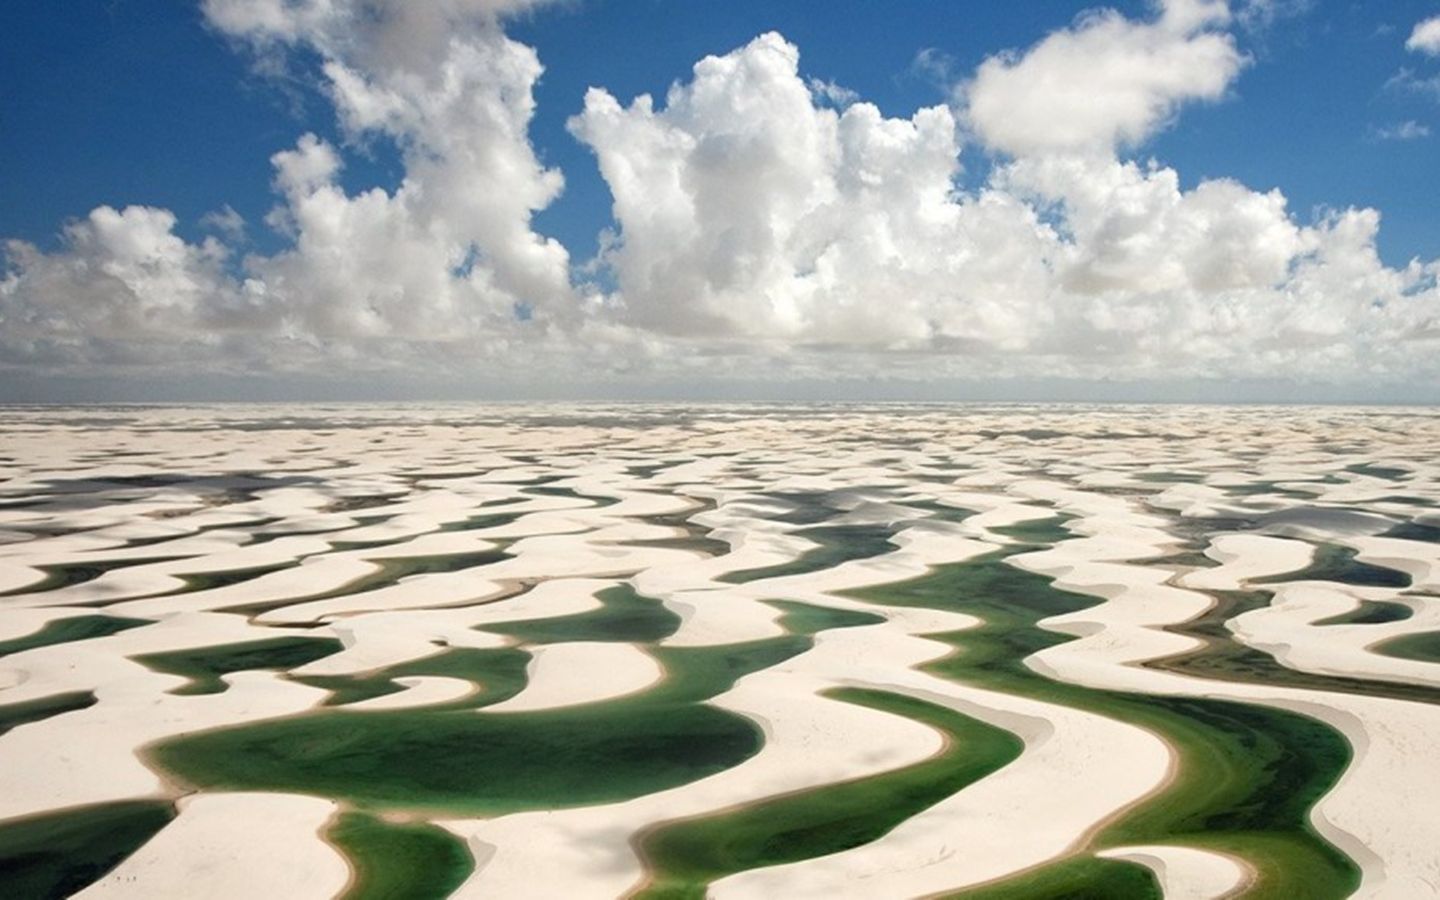 沙漠里的鱼塘：一片世界上独一无二的沙丘湖奇景【寰球大百科363】